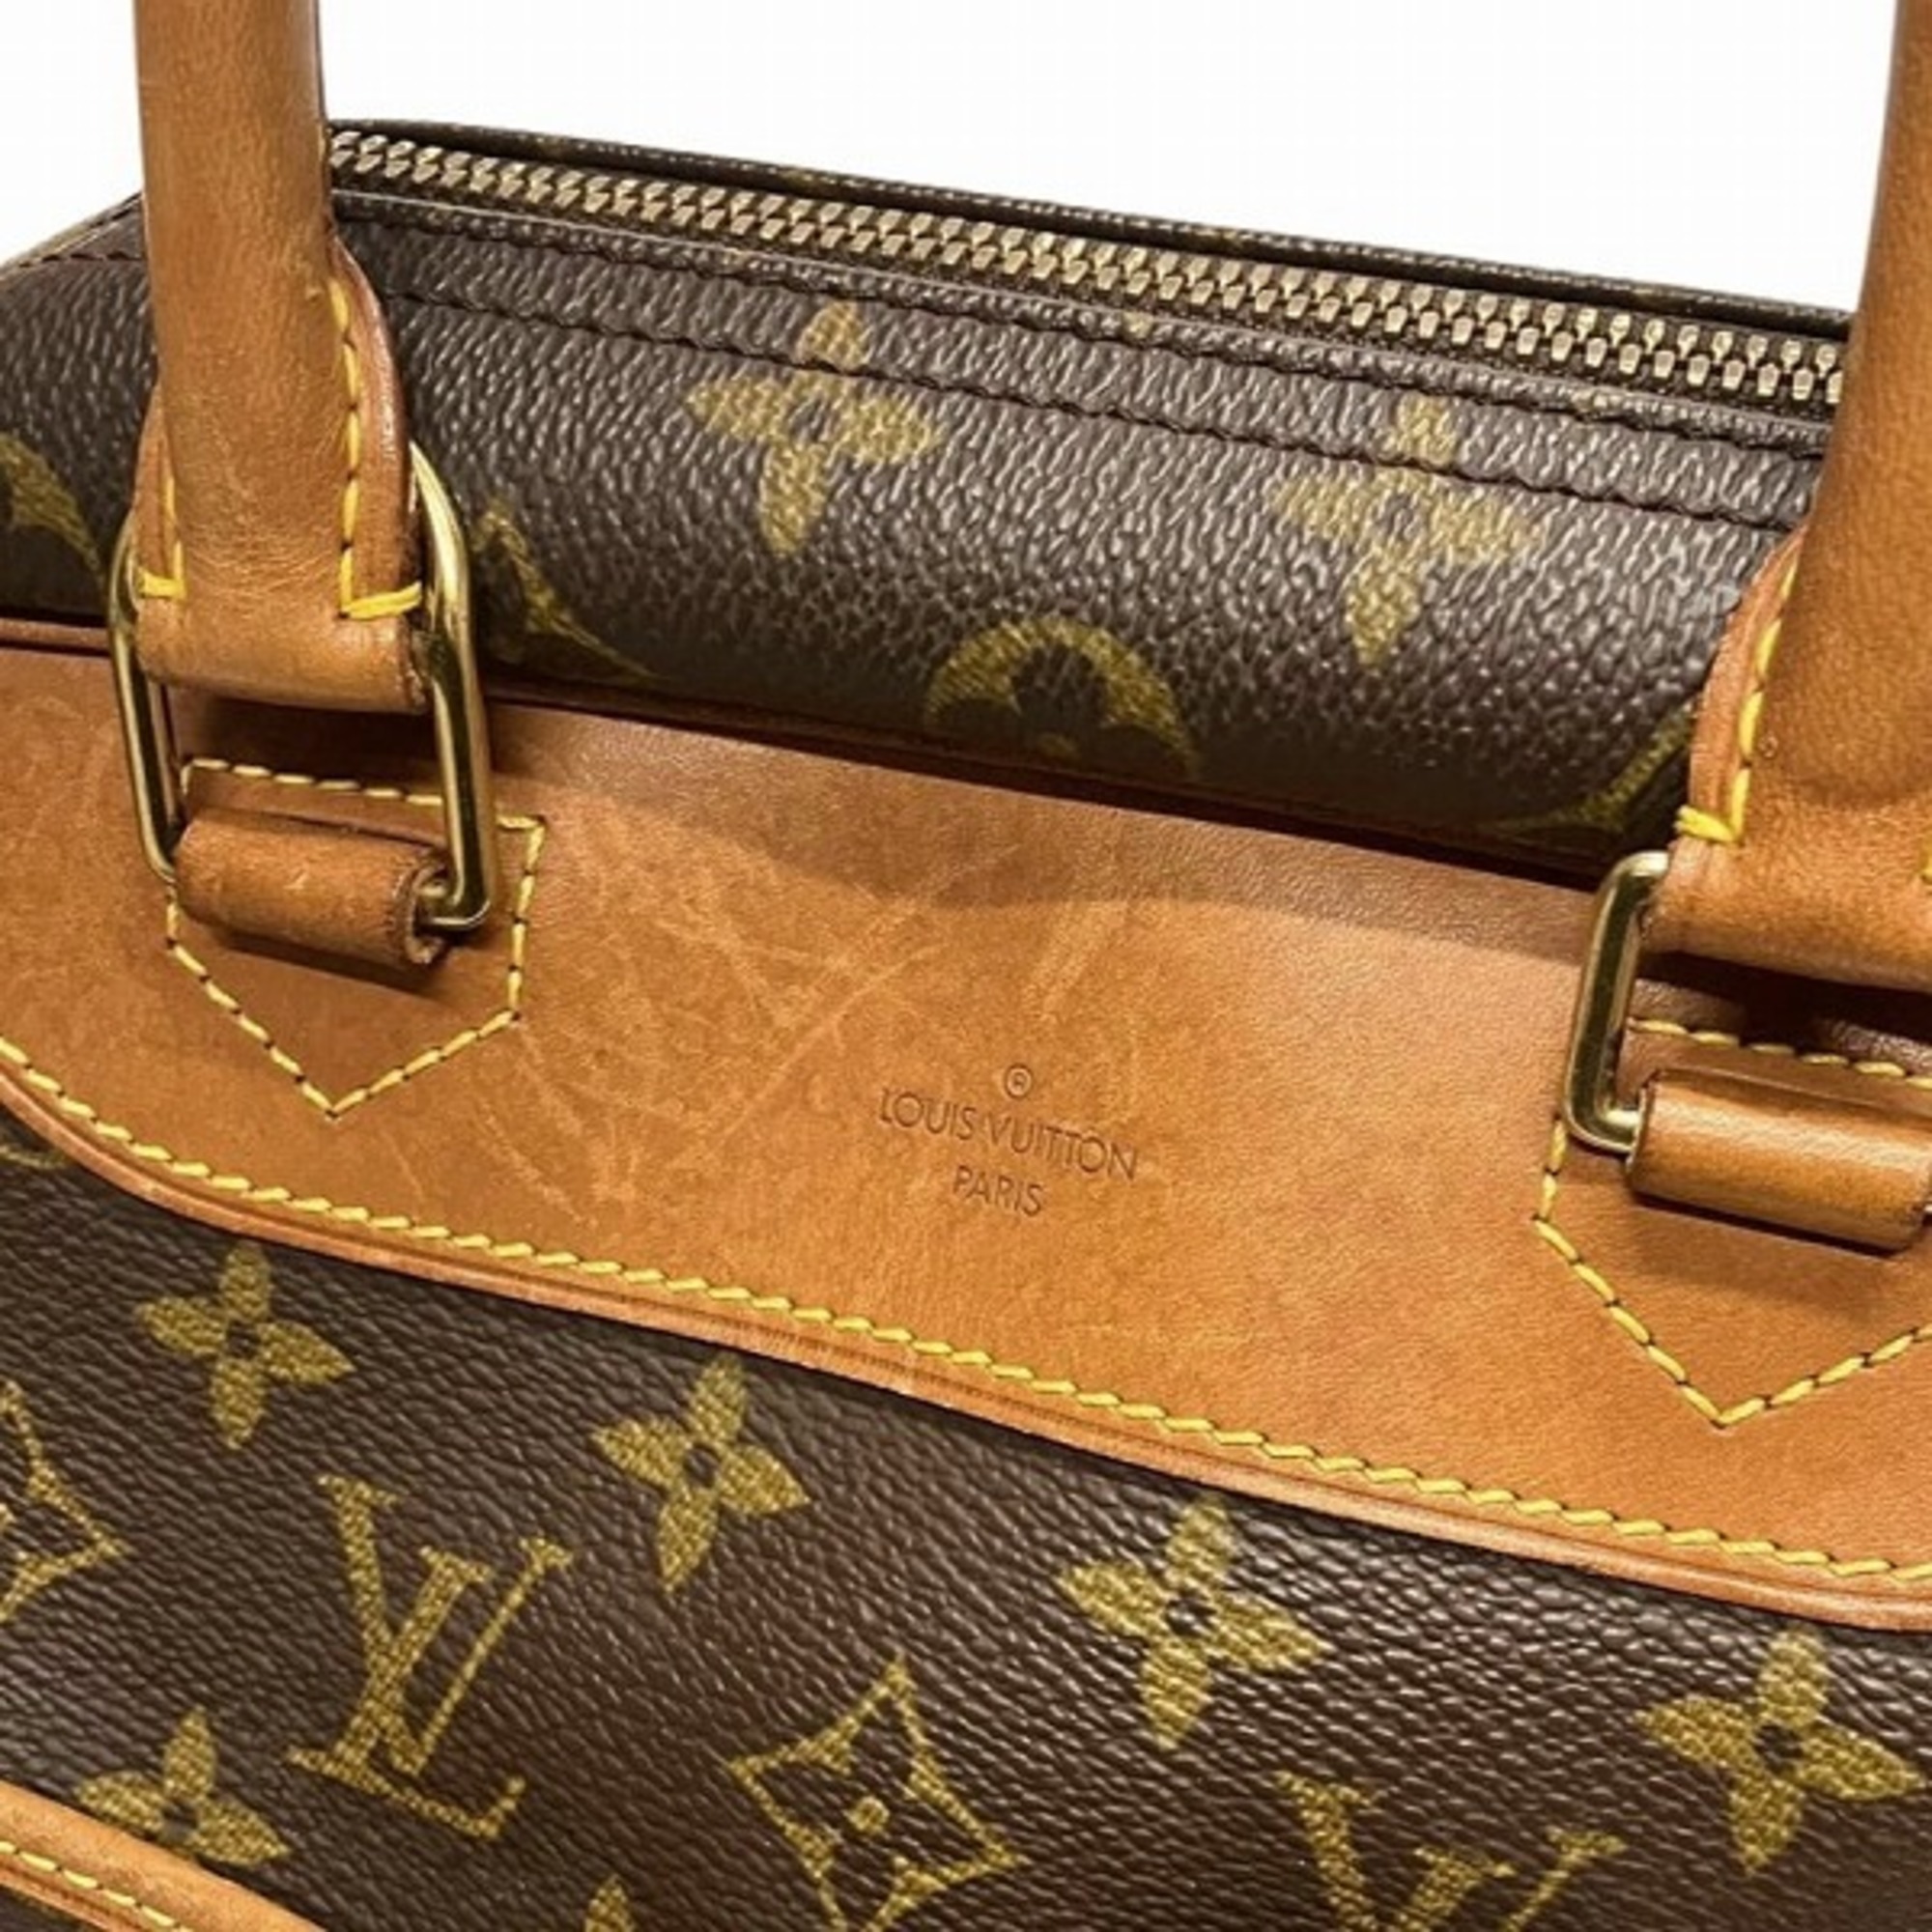 Louis Vuitton Monogram Deauville M47270 Bags Handbags Men's Women's